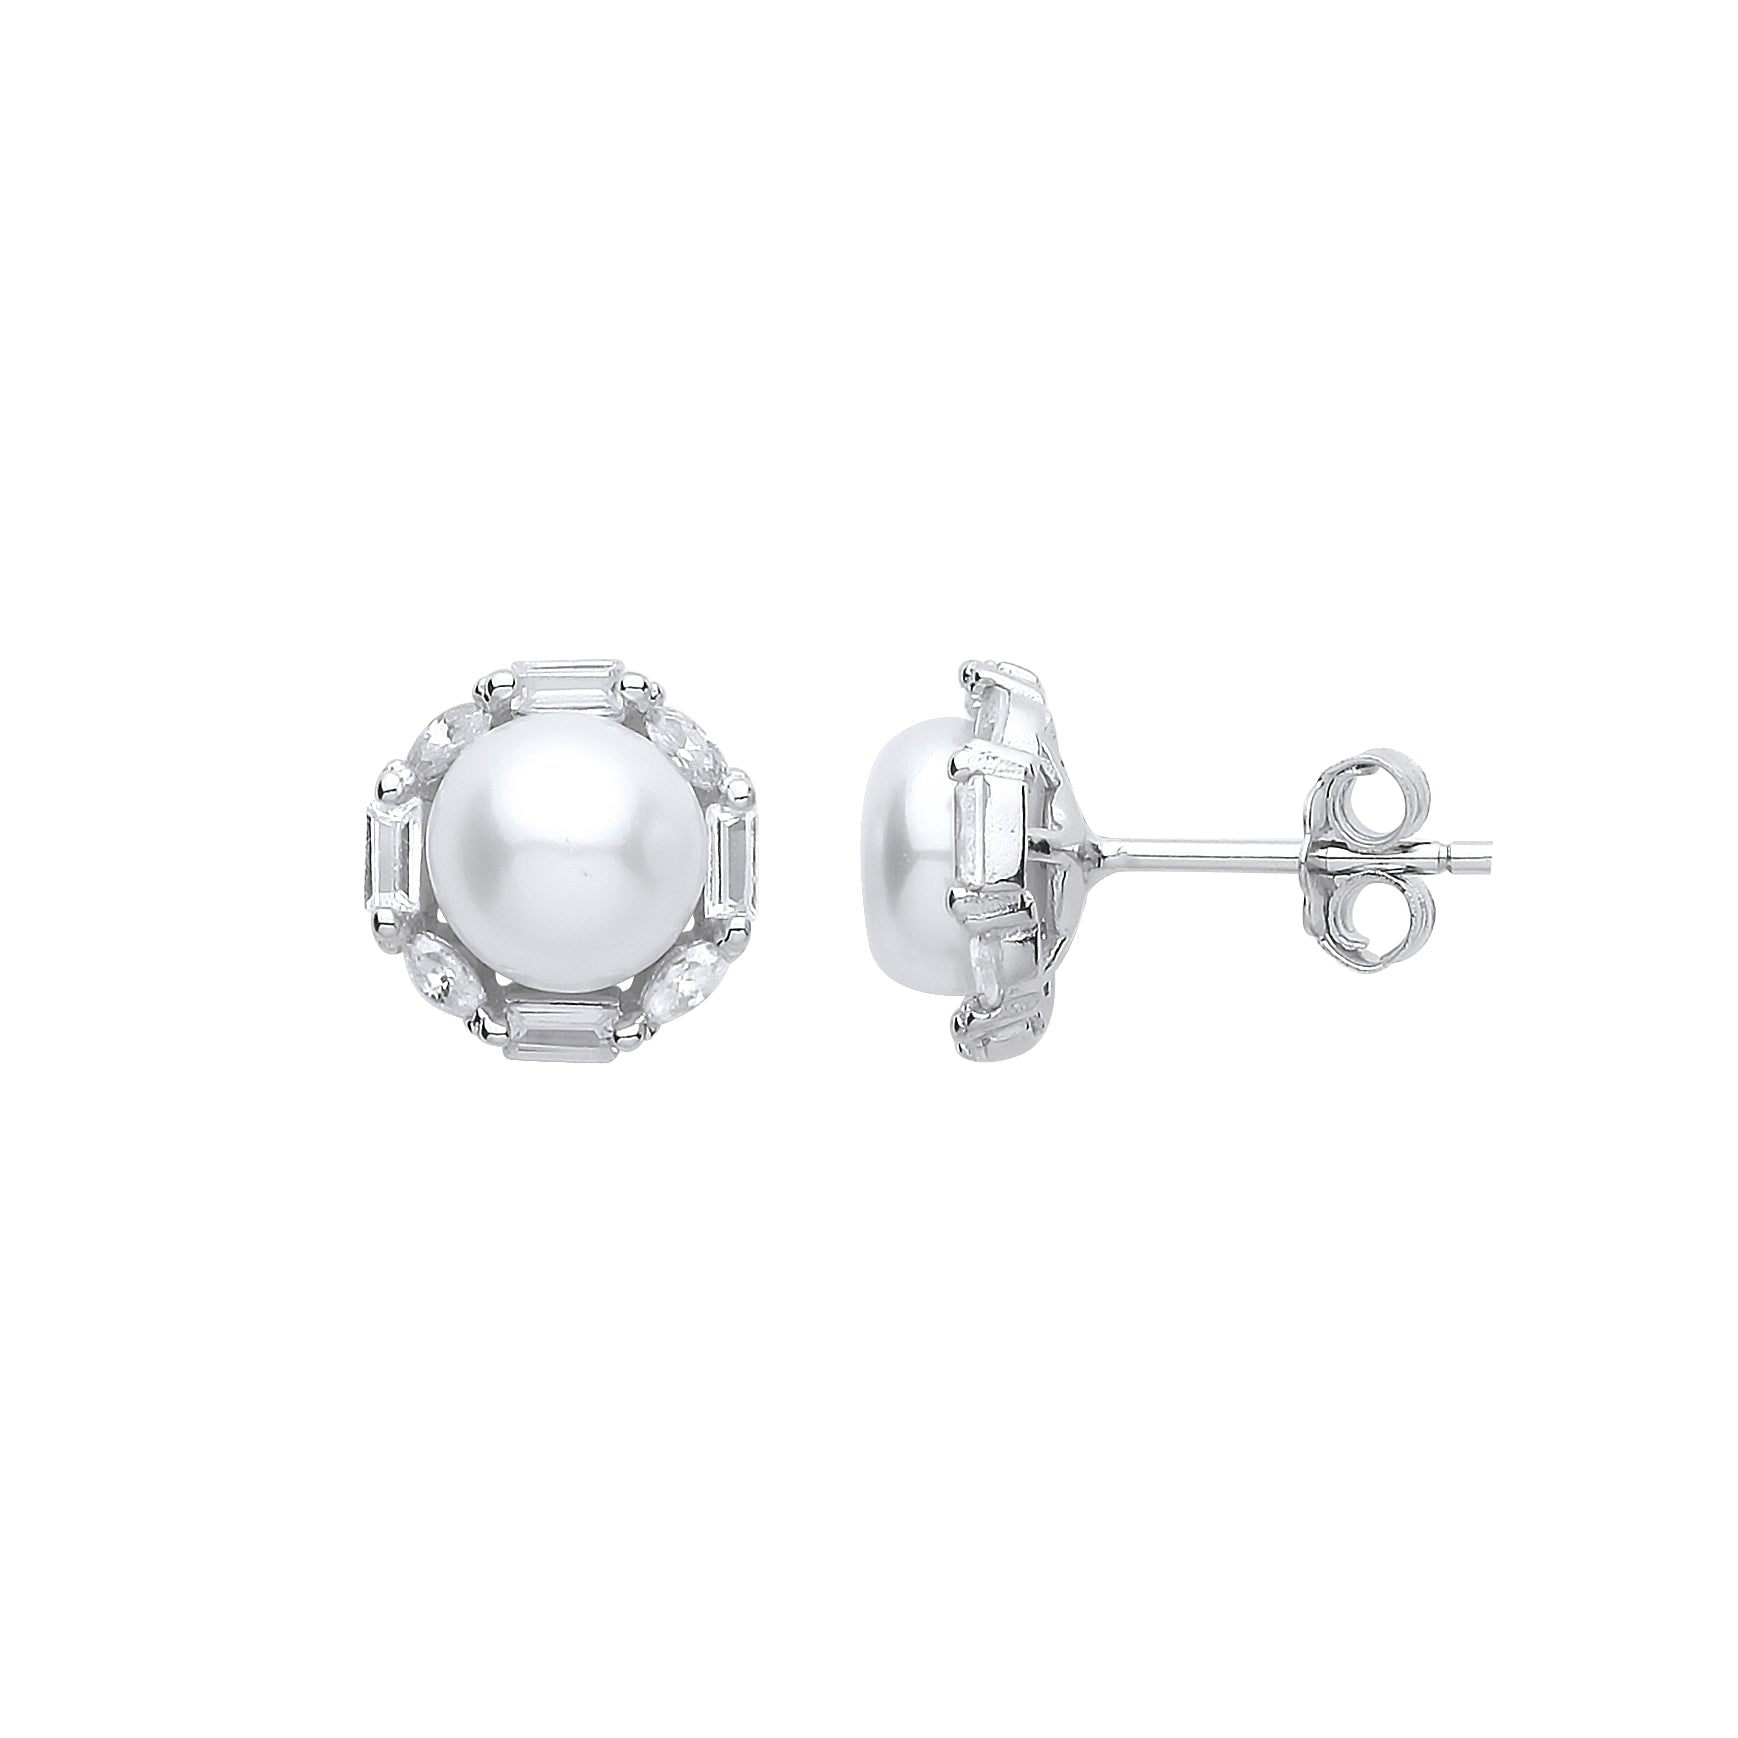 Silver  Baguette CZ Pearl Full Moon Octagon Stud Earrings 7mm - GVE907